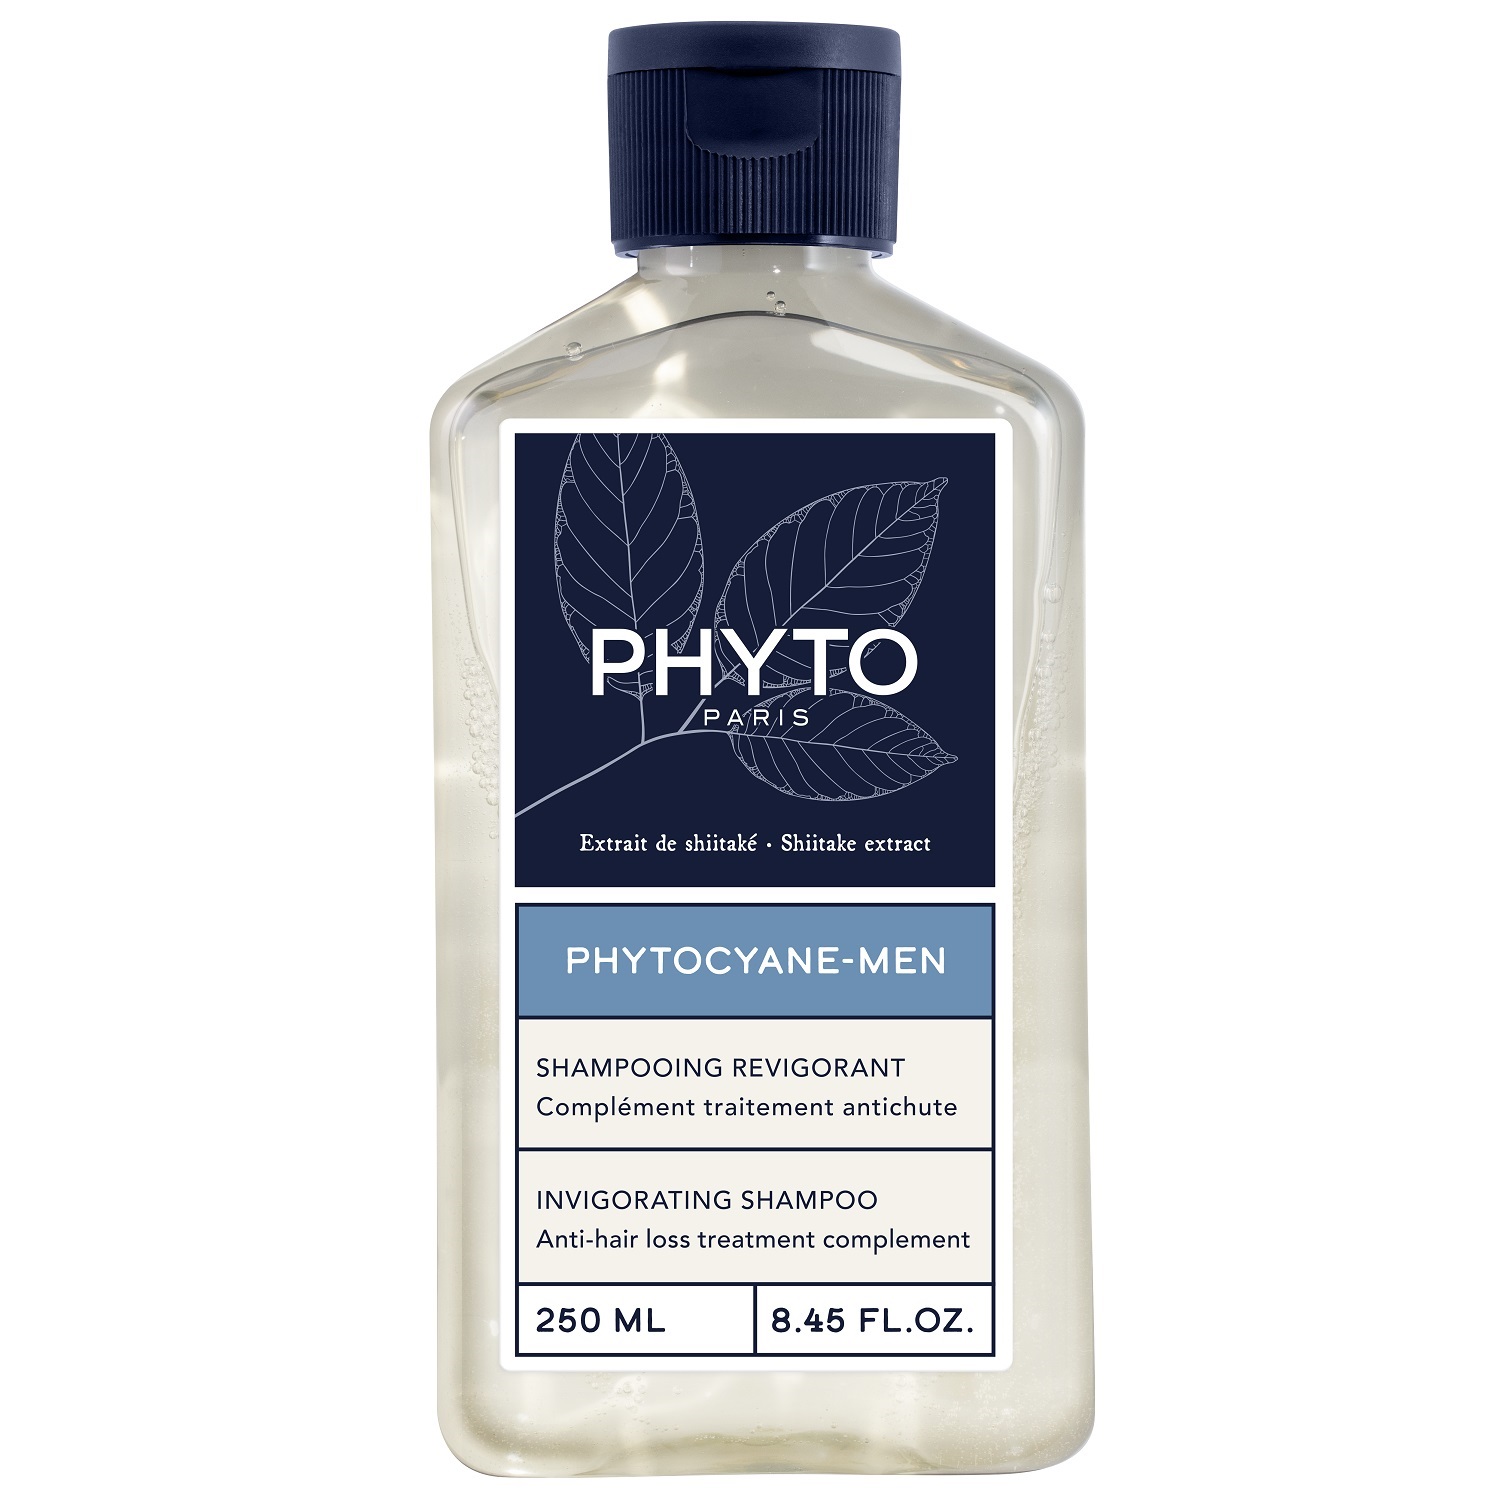 Phyto Мужской укрепляющий шампунь для волос, 250 мл (Phyto, Phytocyane) phyto набор для женщин сыворотка от выпадения волос 12х 5мл укрепляющий шампунь 100 мл phyto phytocyane